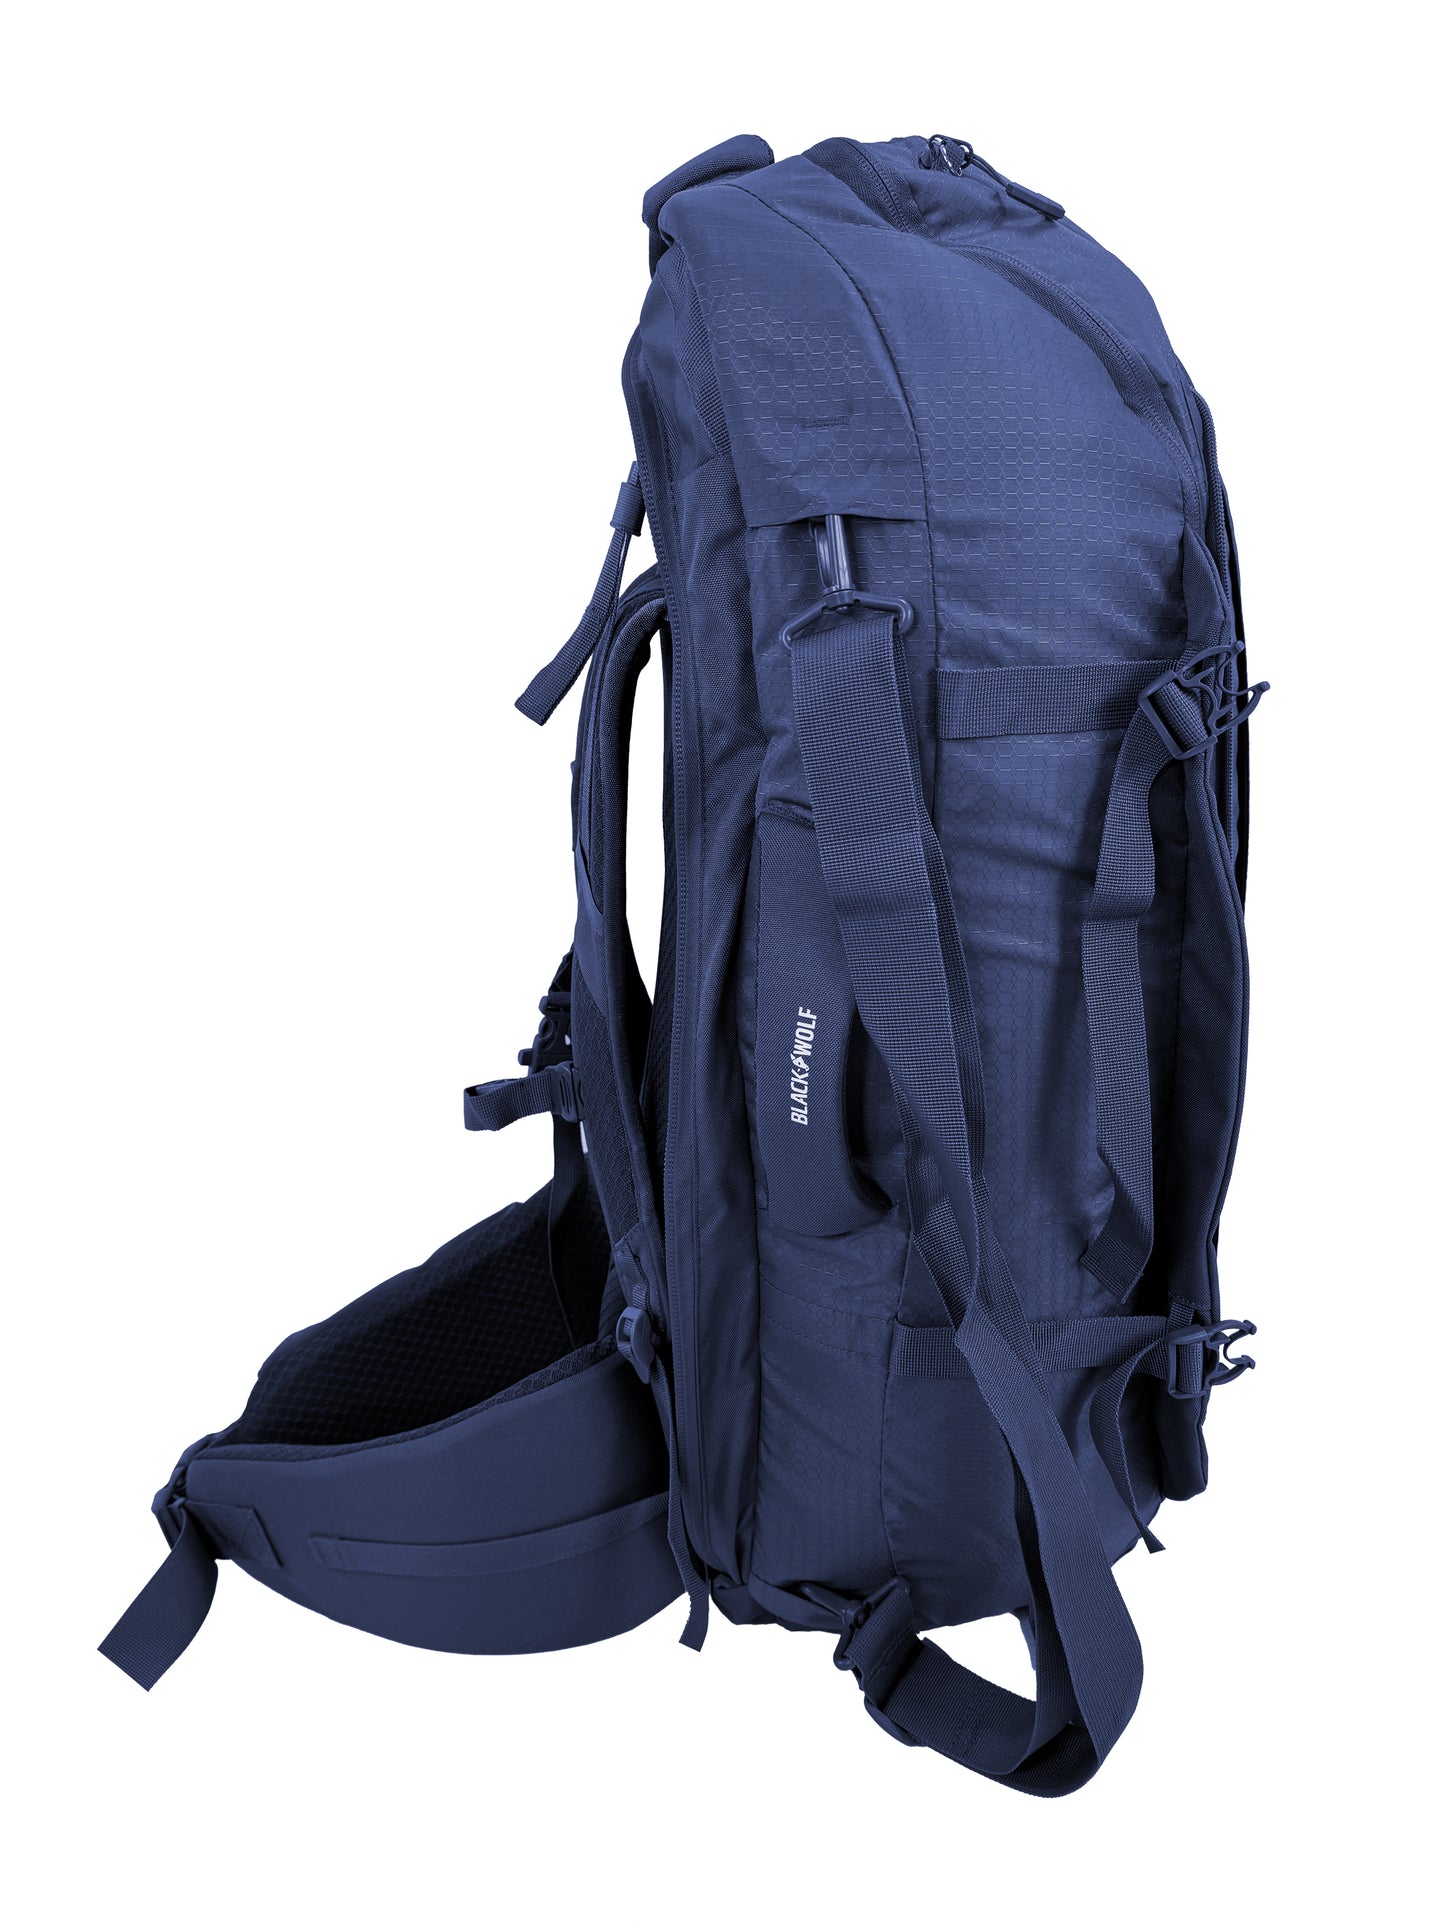 
                  
                    Grand Teton II 75 Travel Backpack
                  
                